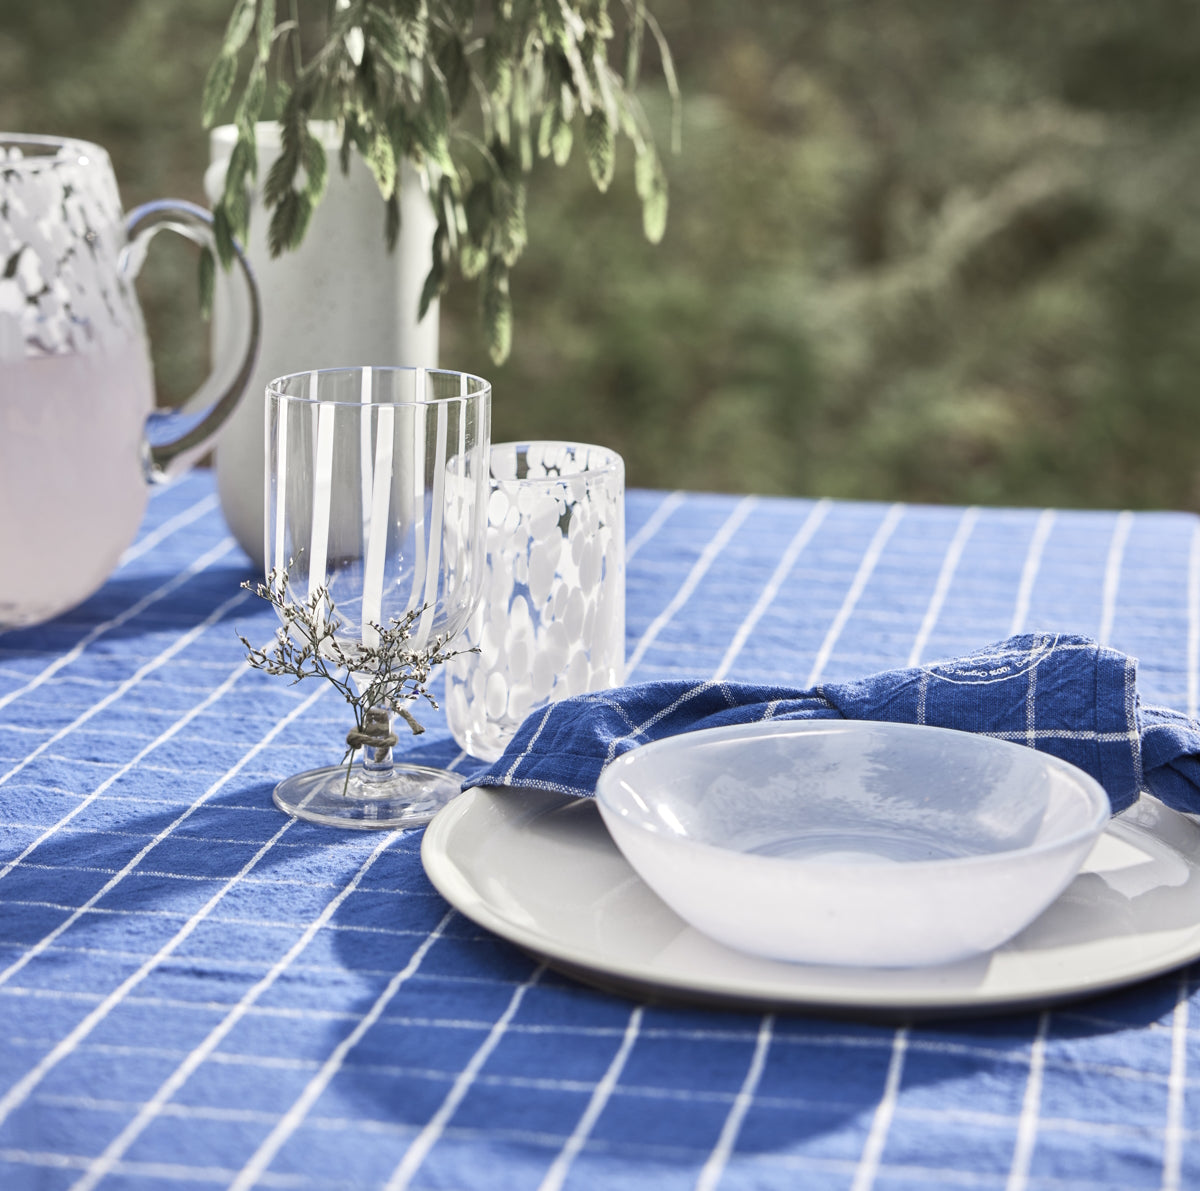 Grid Tablecloth 200x140 Dark Blue